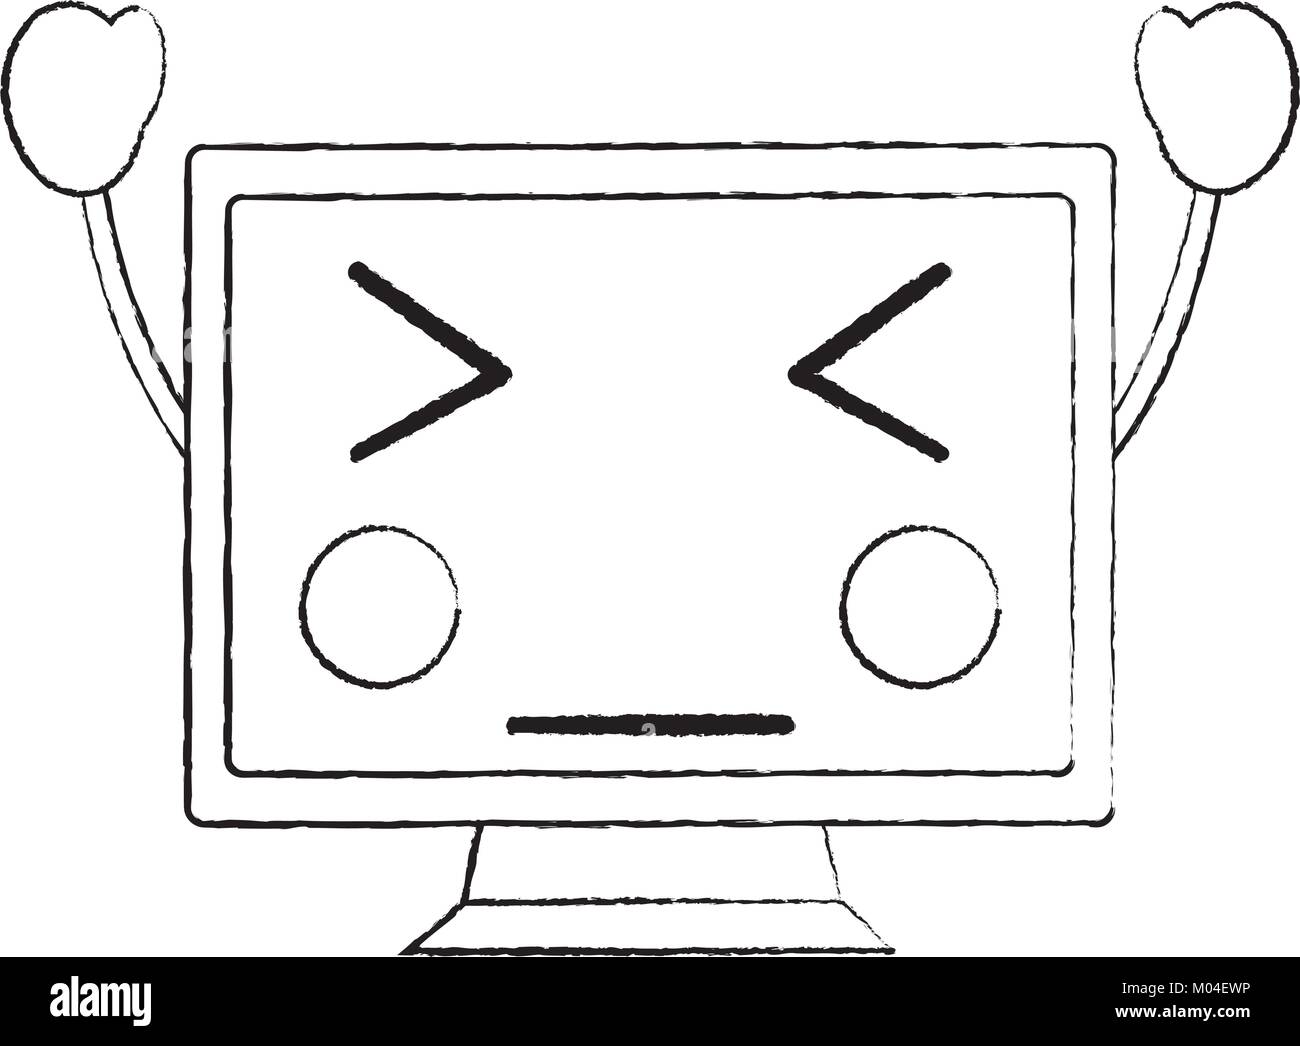 angry computer monitor kawaii icon image Stock Vector Image & Art - Alamy